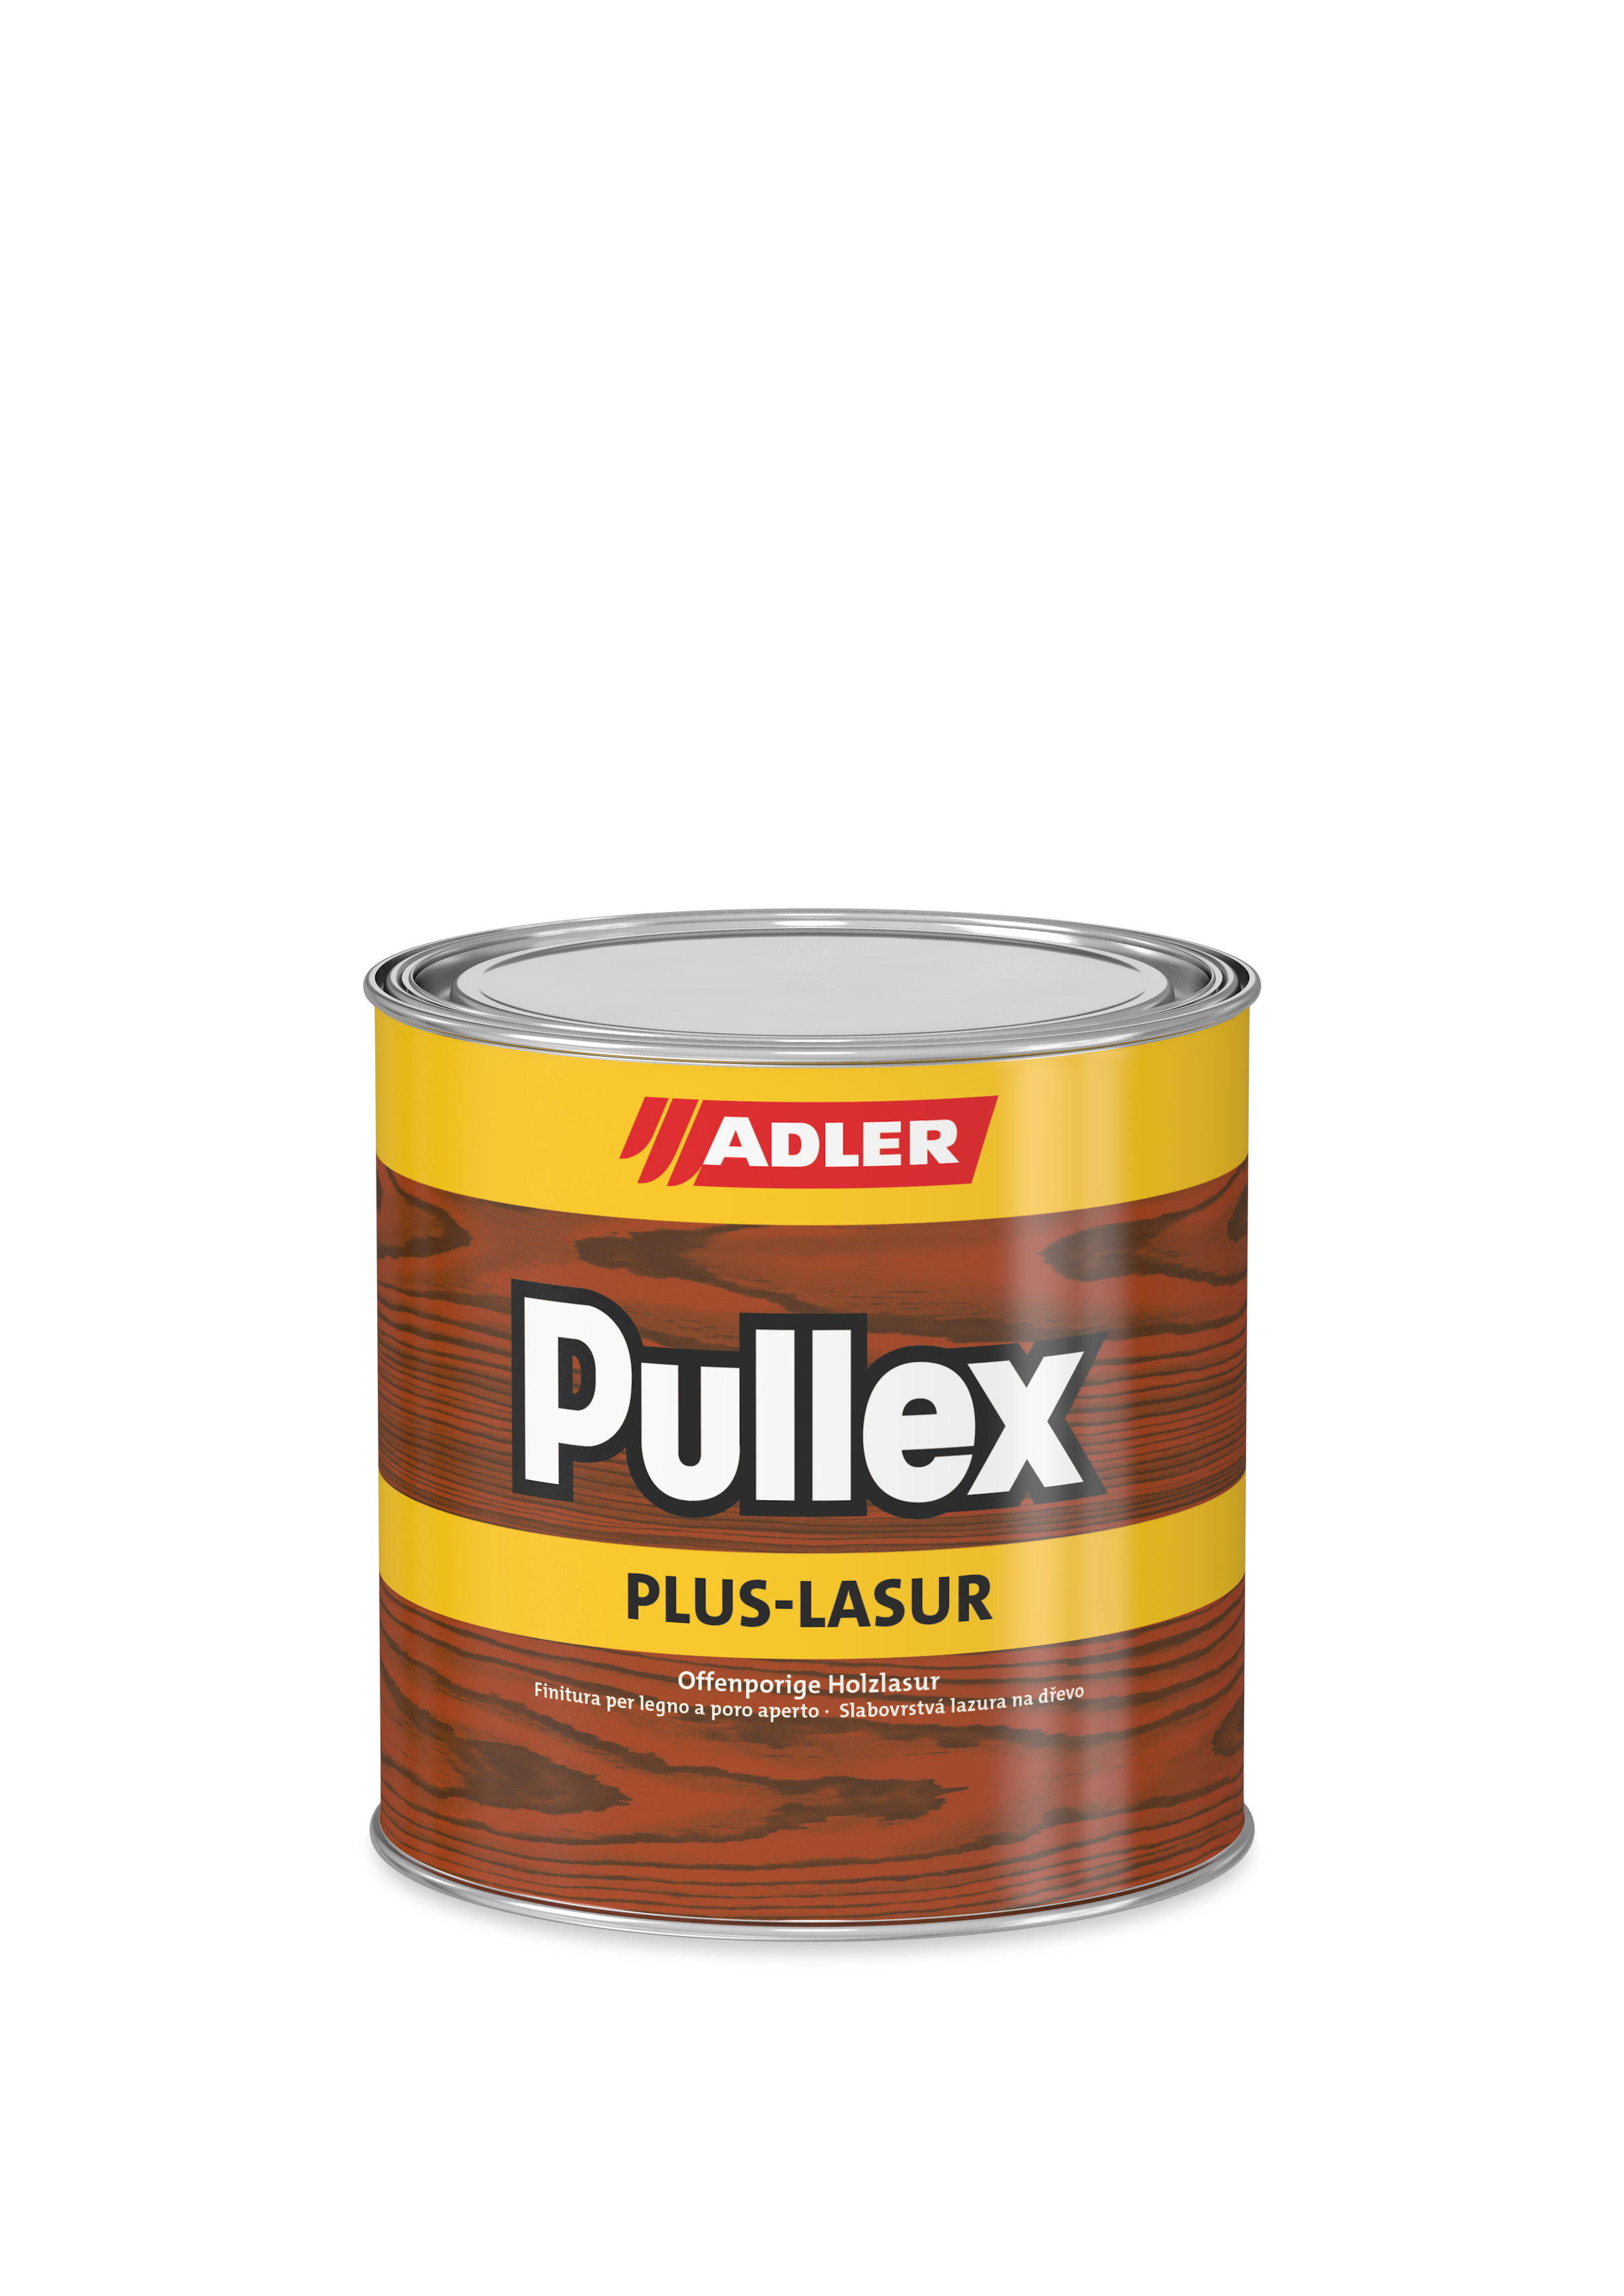 Pullex Plus-Lasur Kiefer 2,5 Liter